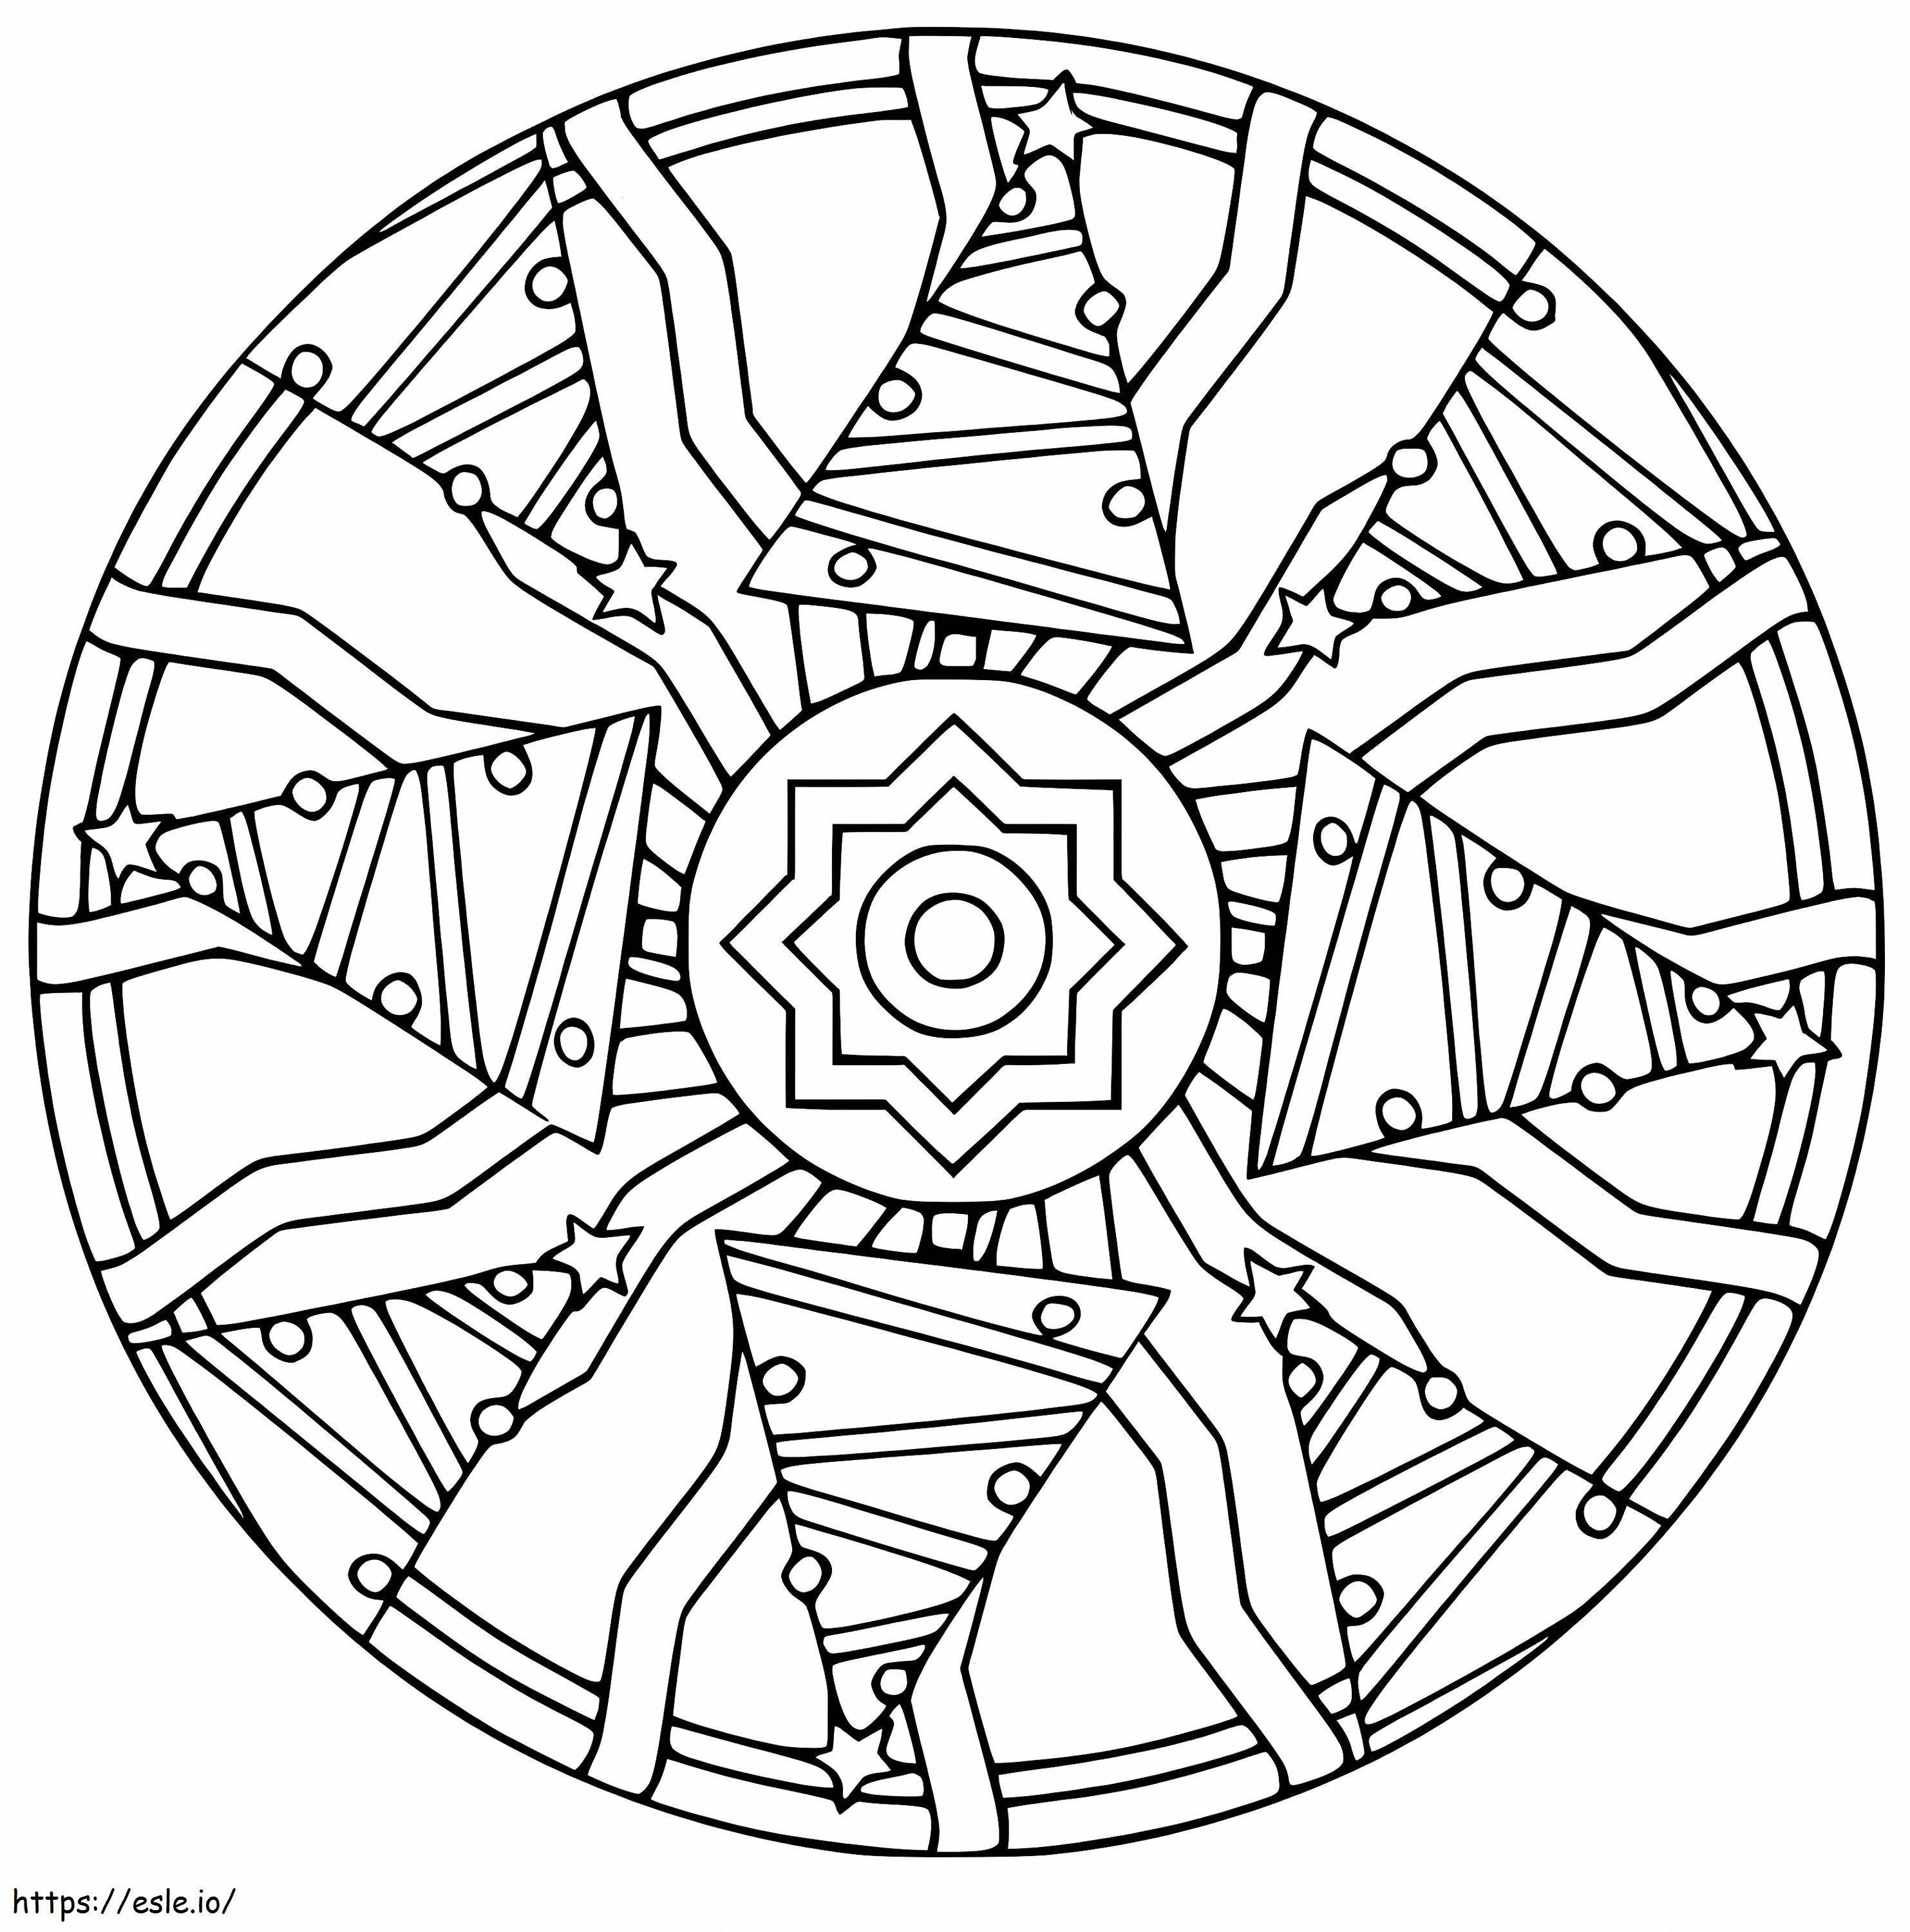 Coloriage Mandala de Noël 17 à imprimer dessin